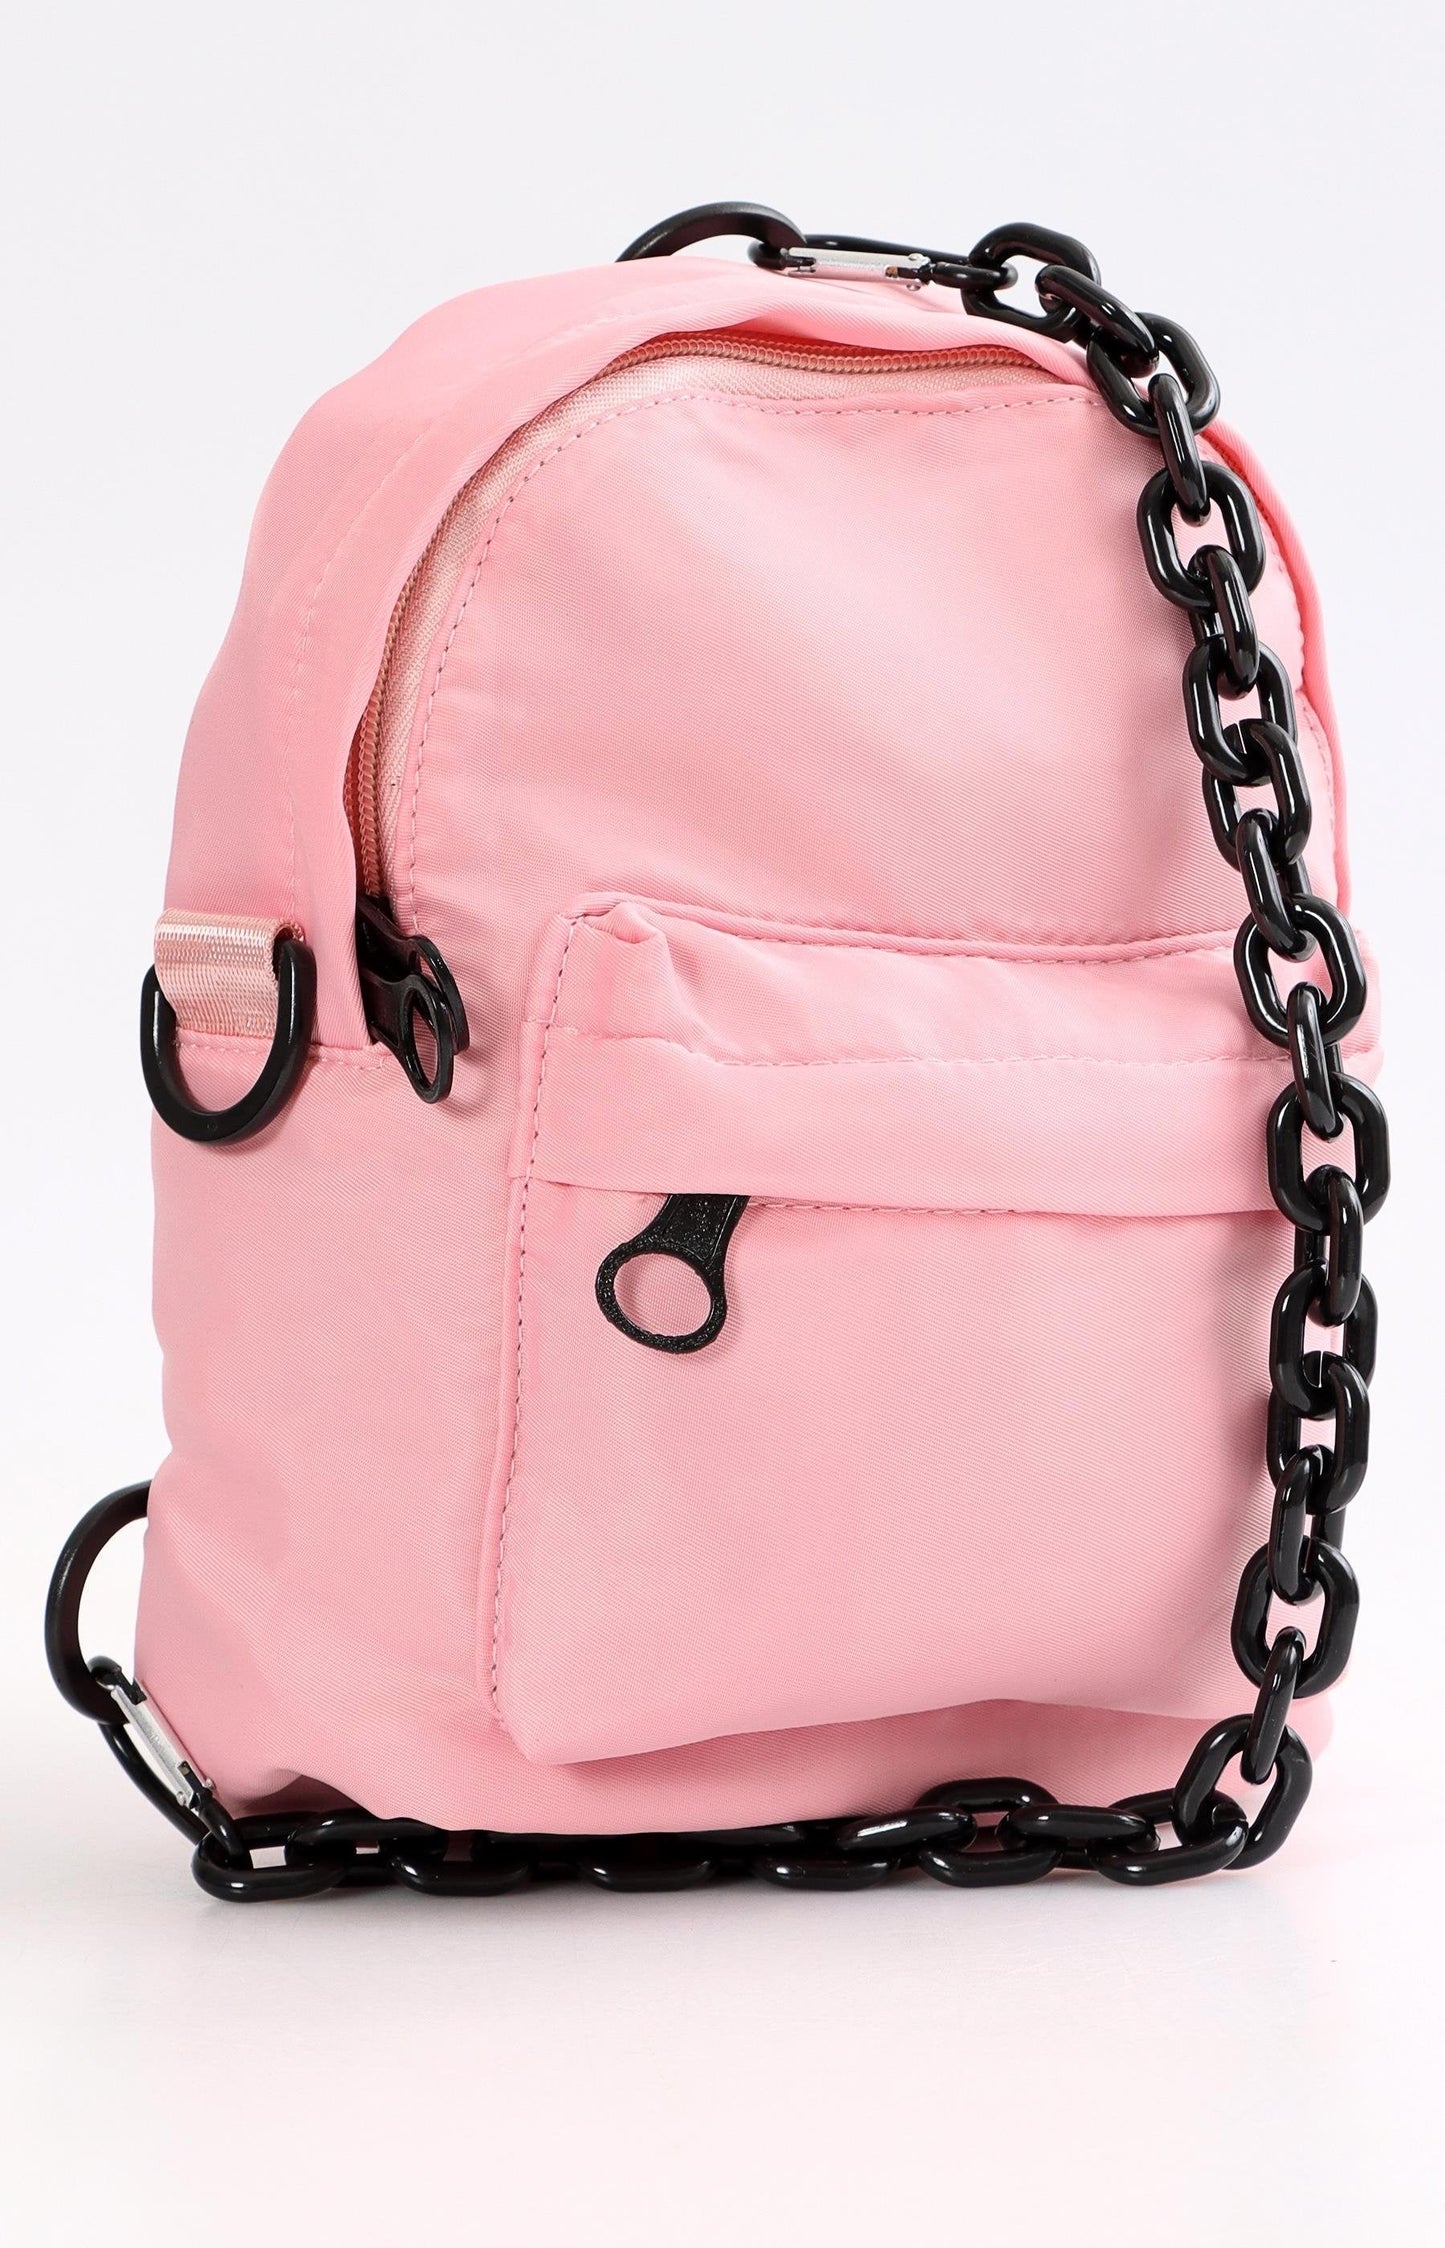 Ladies Backpack - Pink